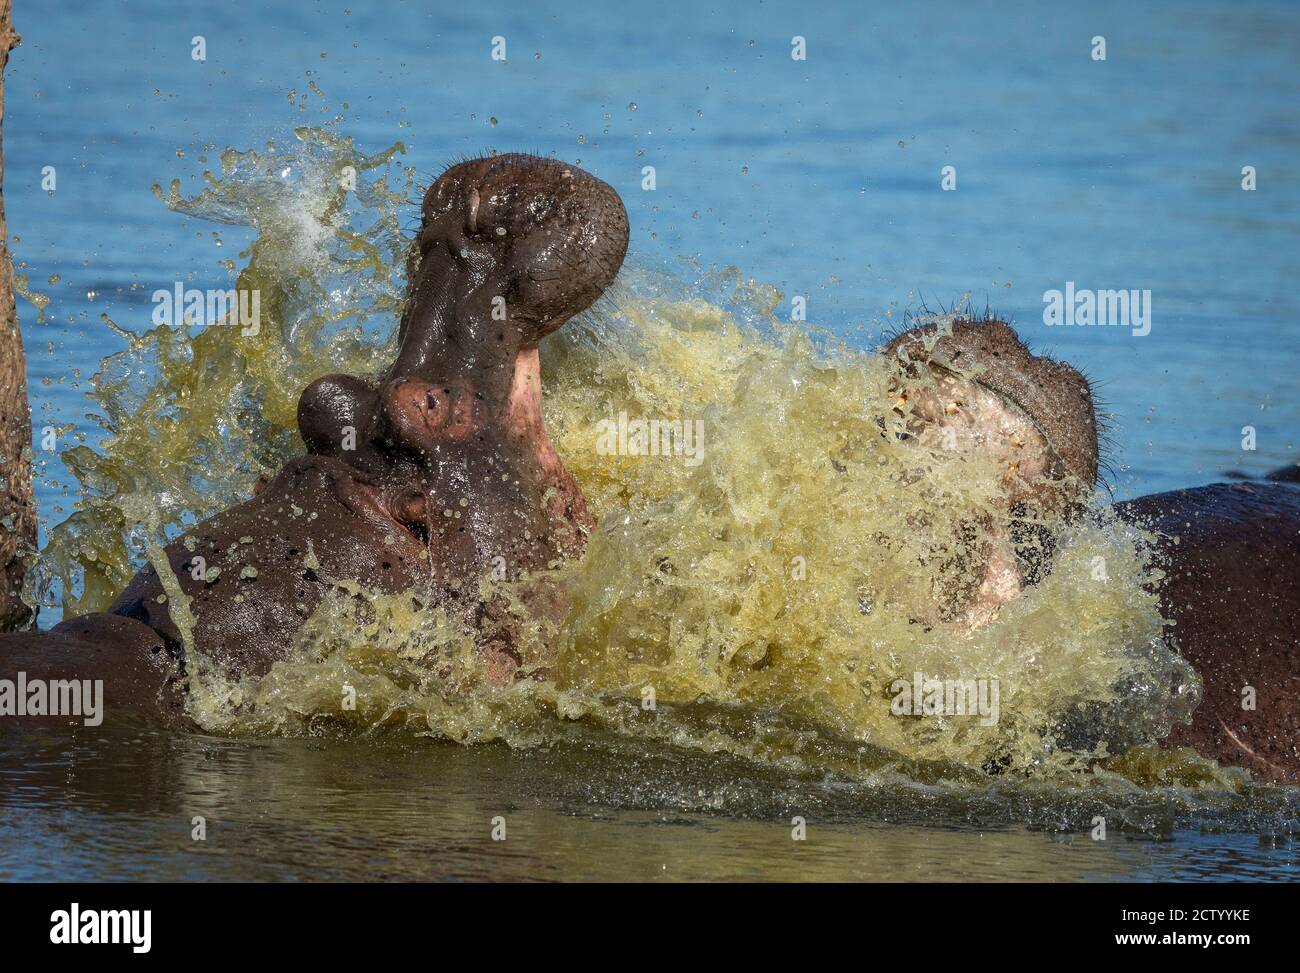 Deux hippopotames se battent dans l'eau dans le parc Kruger au sud Afrique Banque D'Images